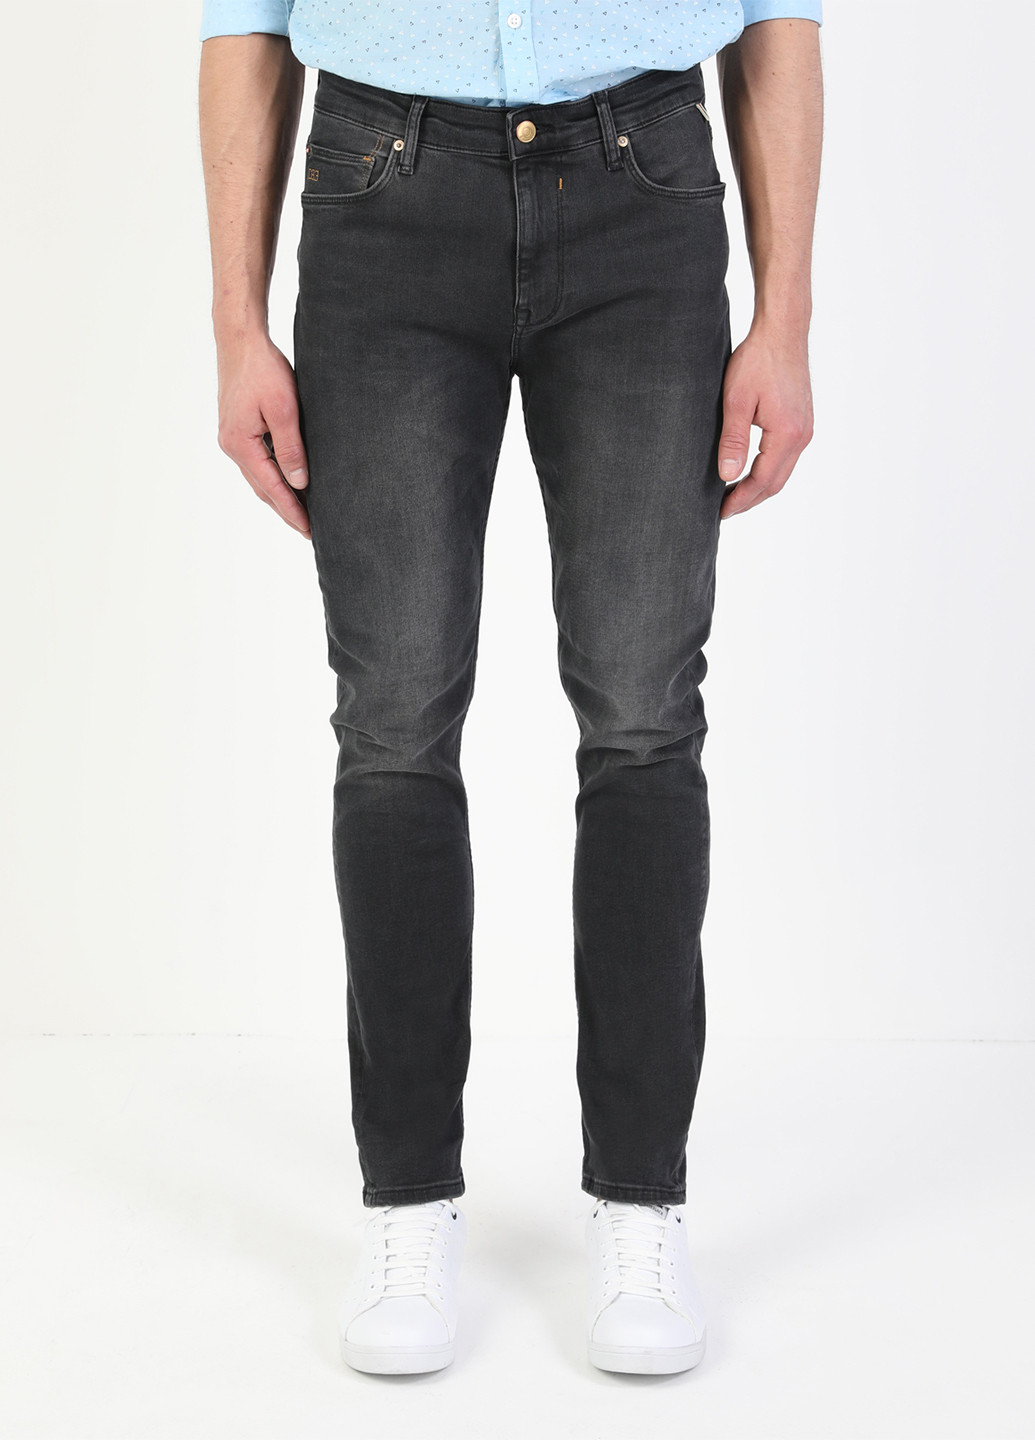 Темно-серые демисезонные зауженные джинсы 035 RYAN Colin's